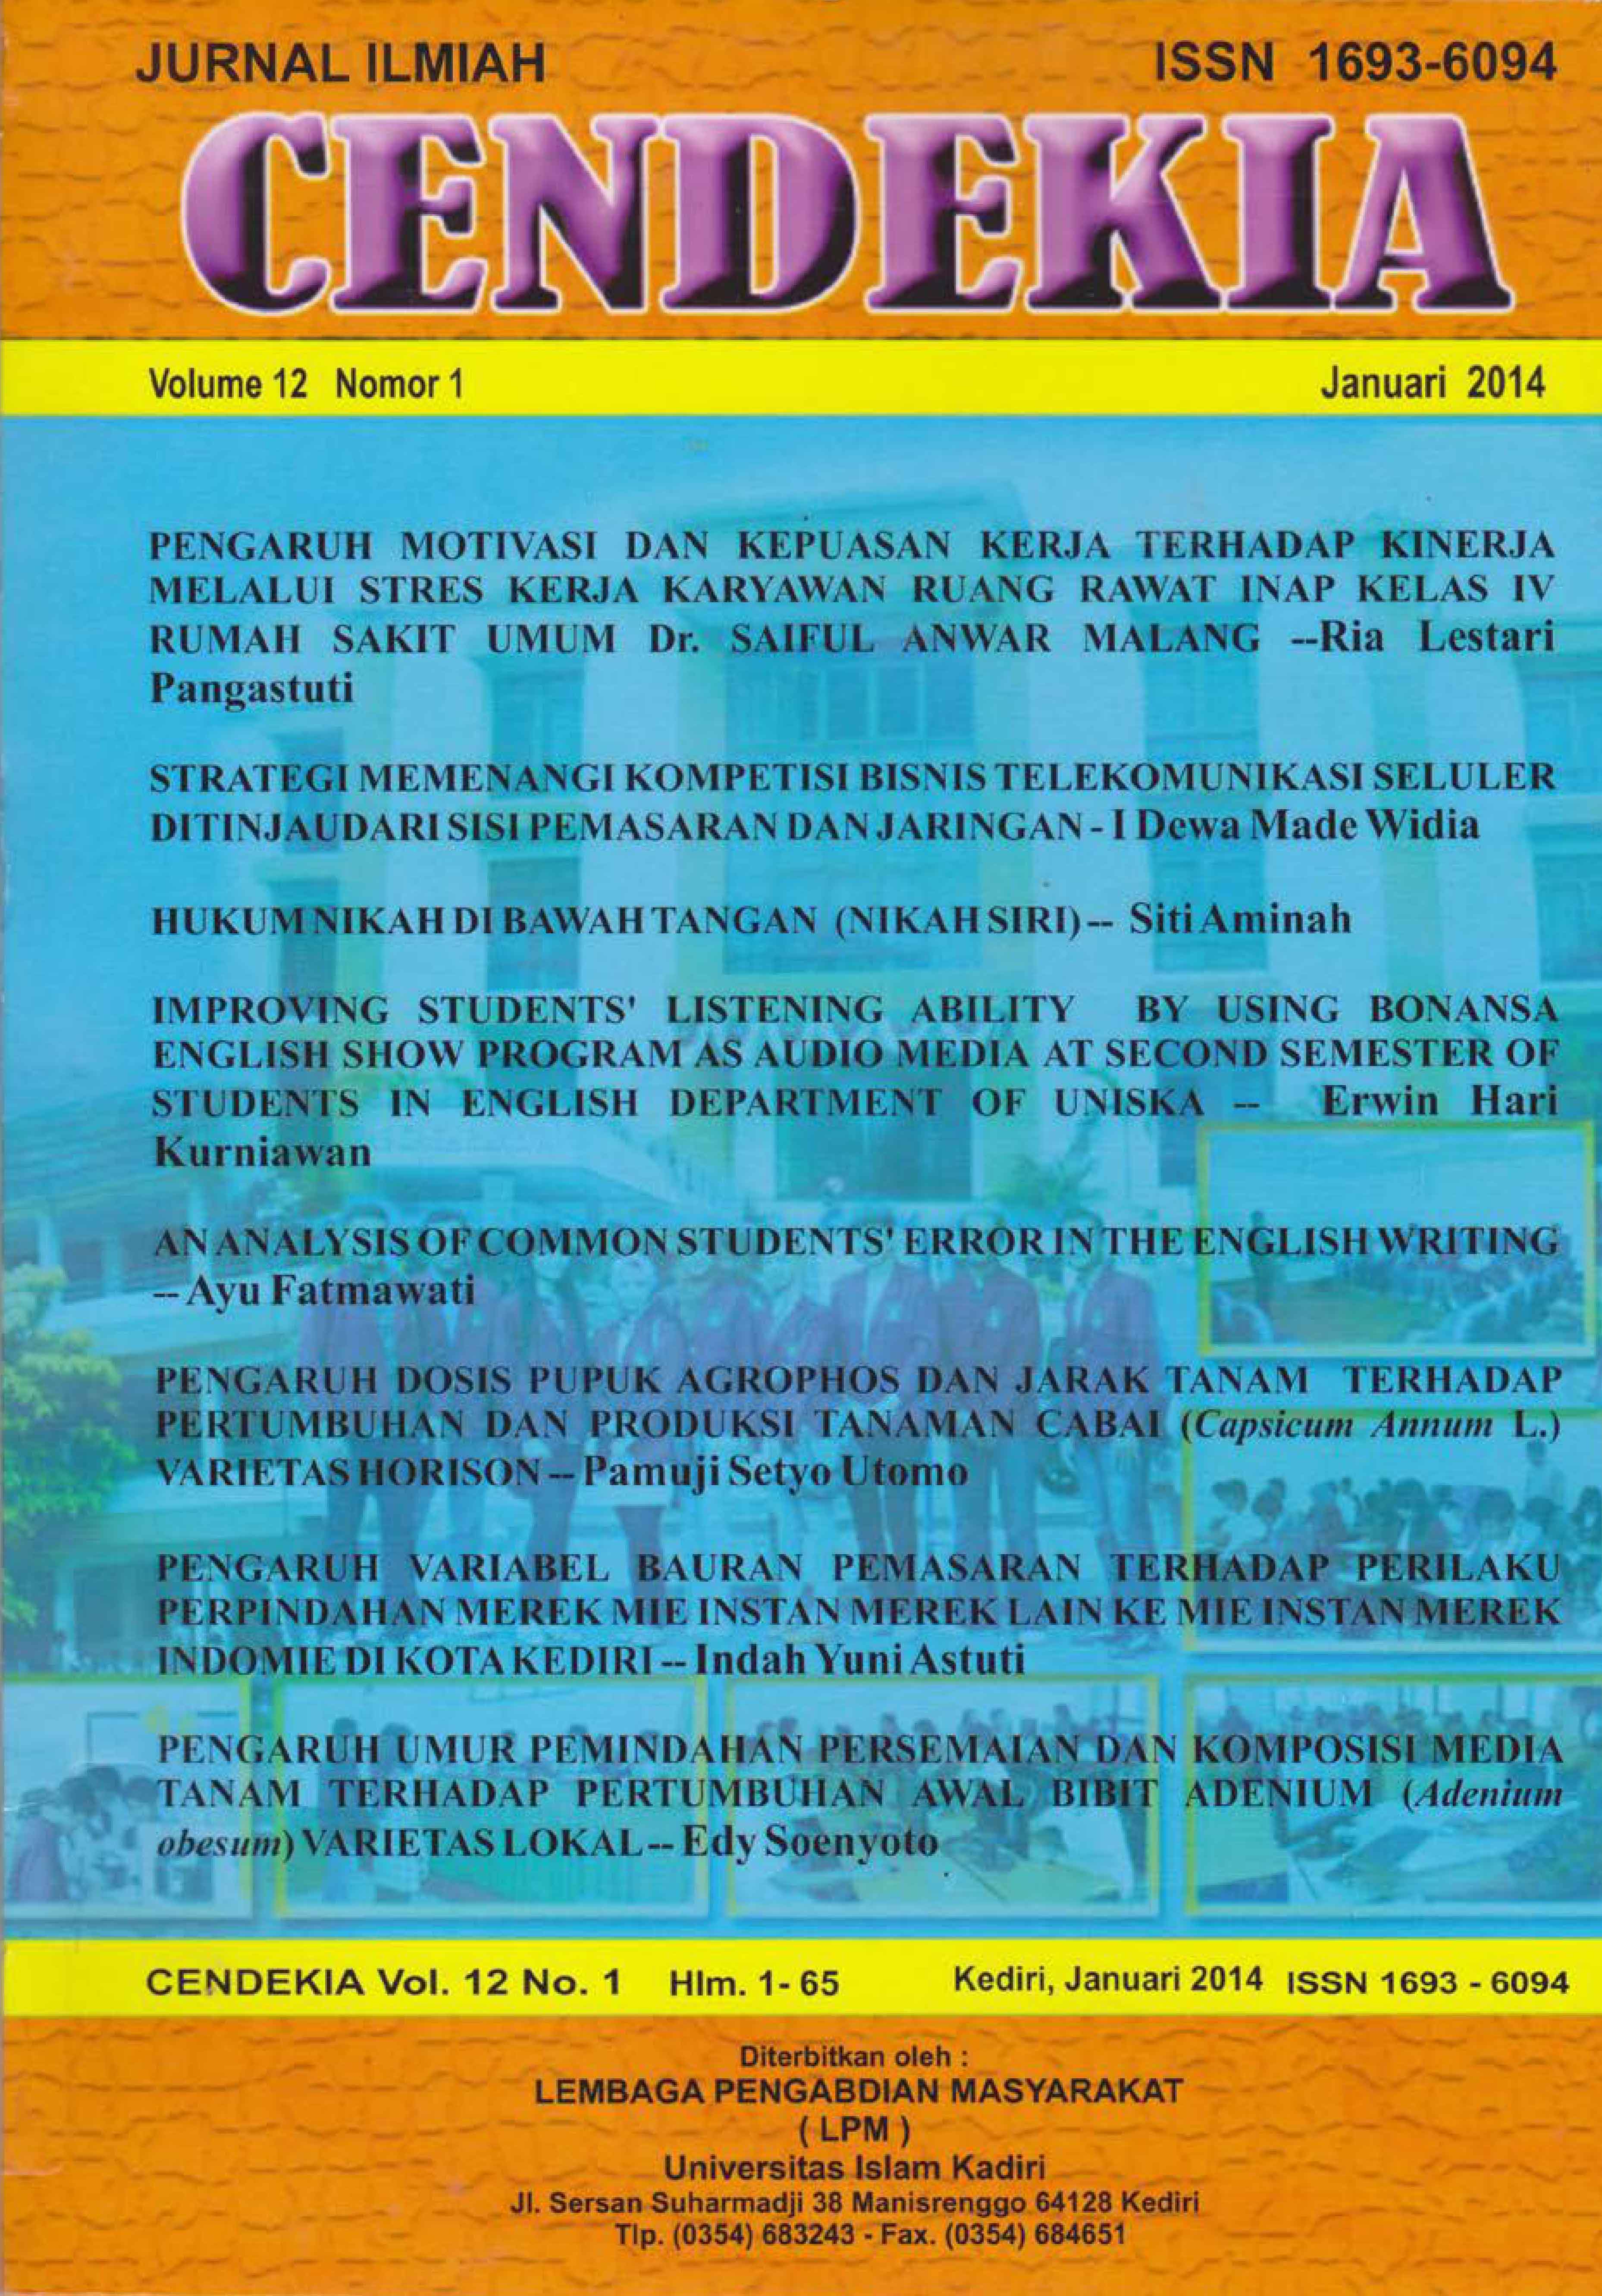 Cendekia Volume 12 No. 1 Januari 2014